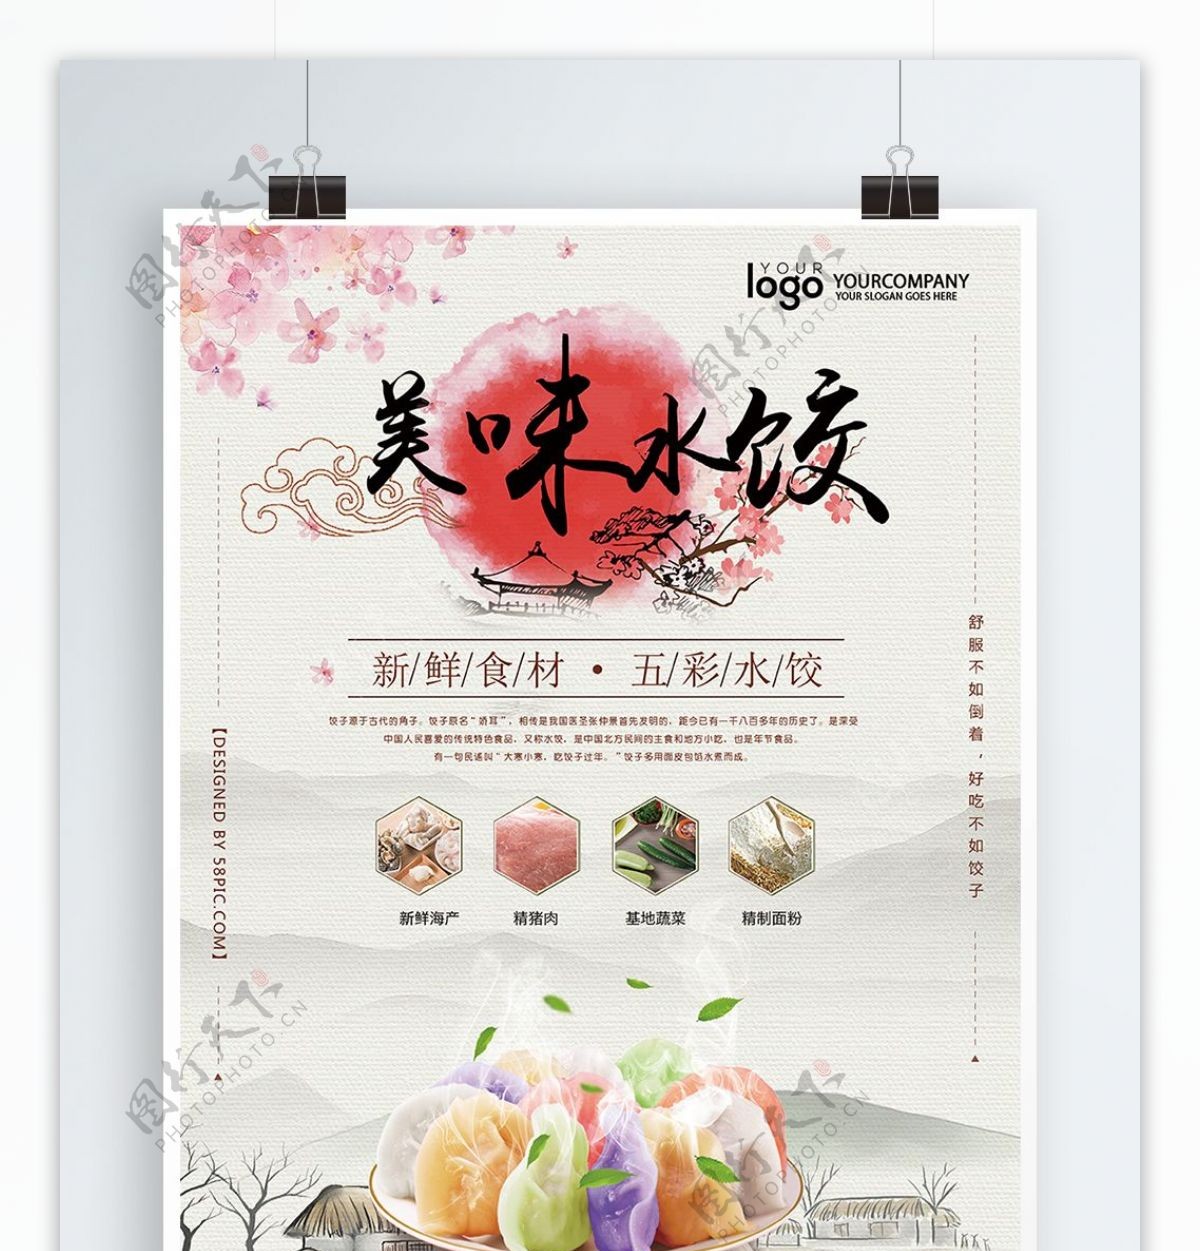 日系风格饺子美食宣传海报